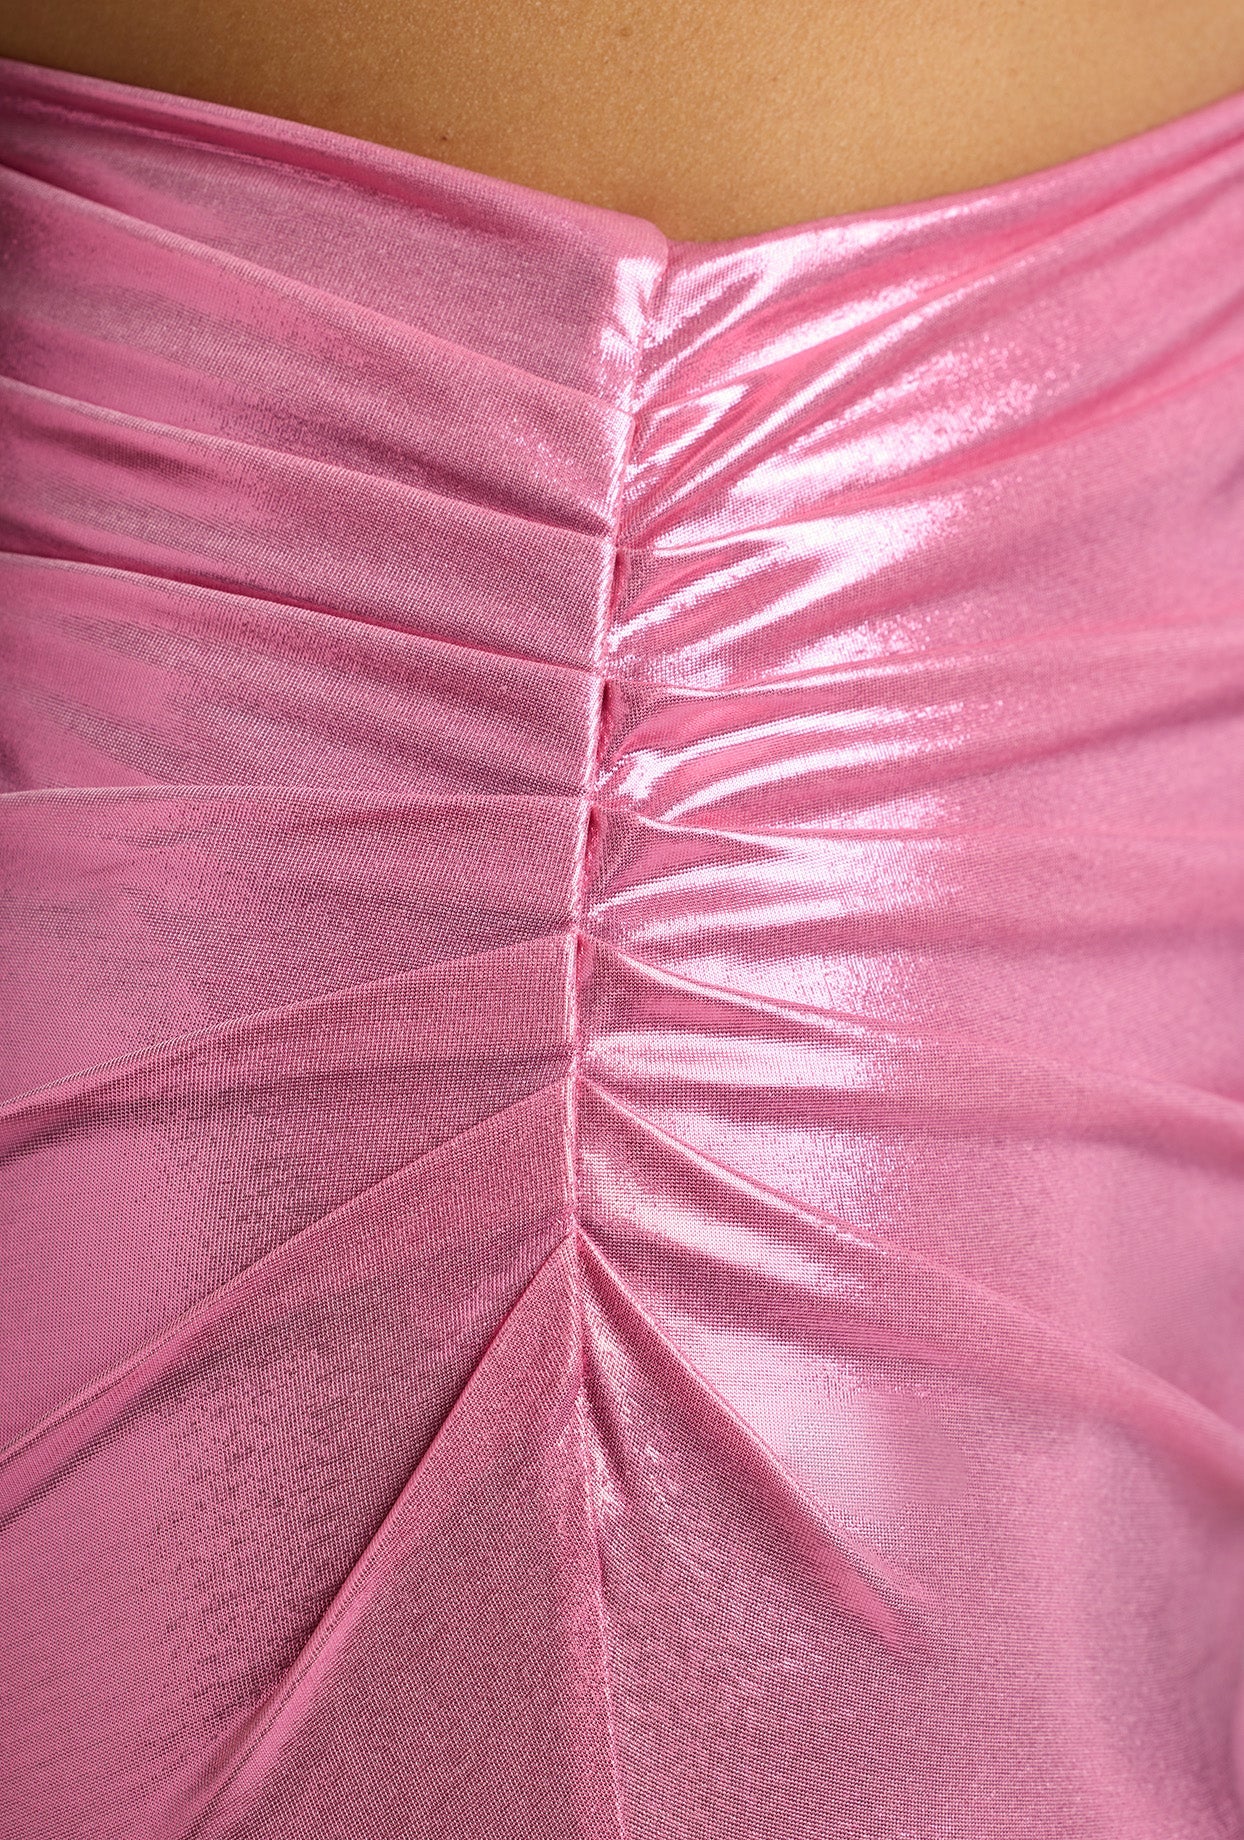 Vestido largo drapeado de punto metalizado en rosa rosa